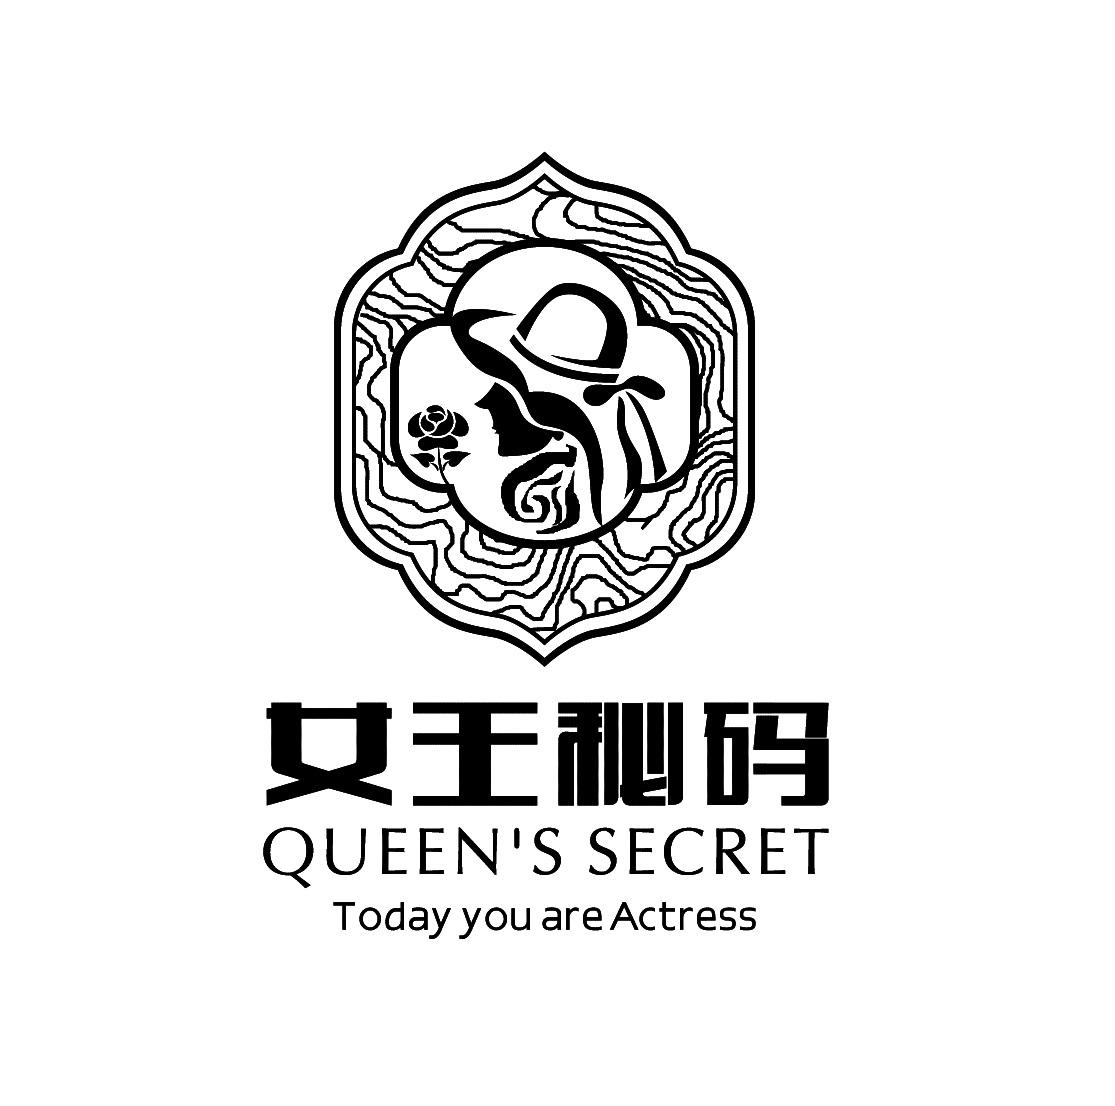 女王店名logo设计图片图片